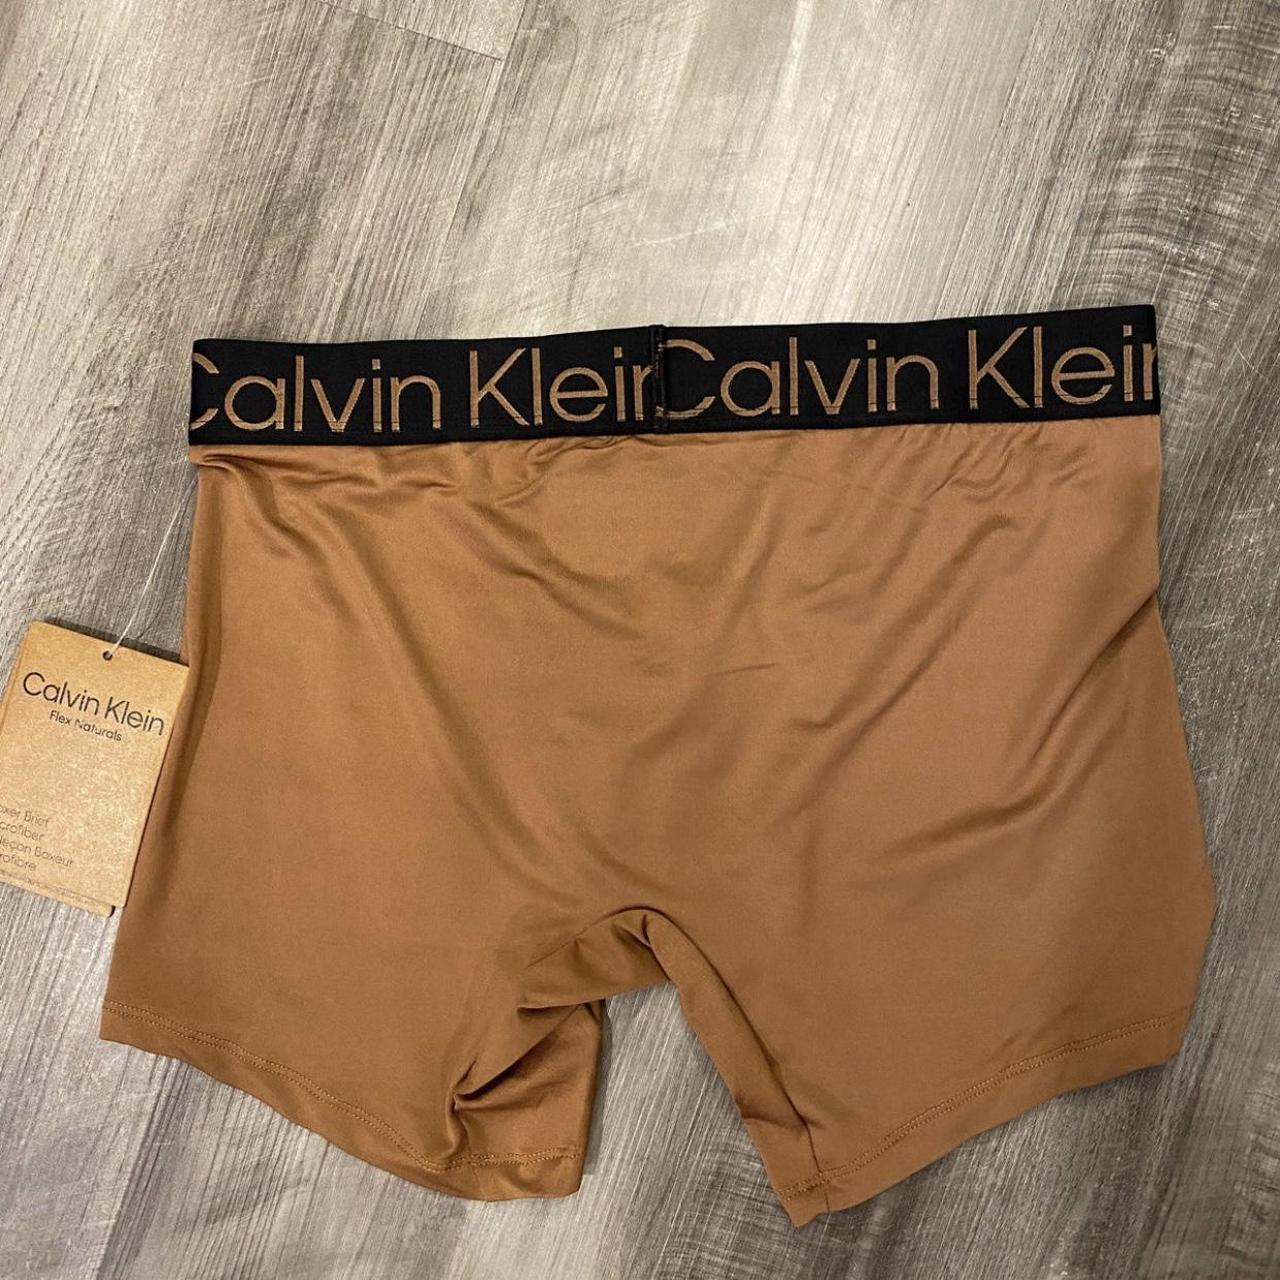 Calvin Klein Men's Tan Boxers-and-briefs (2)